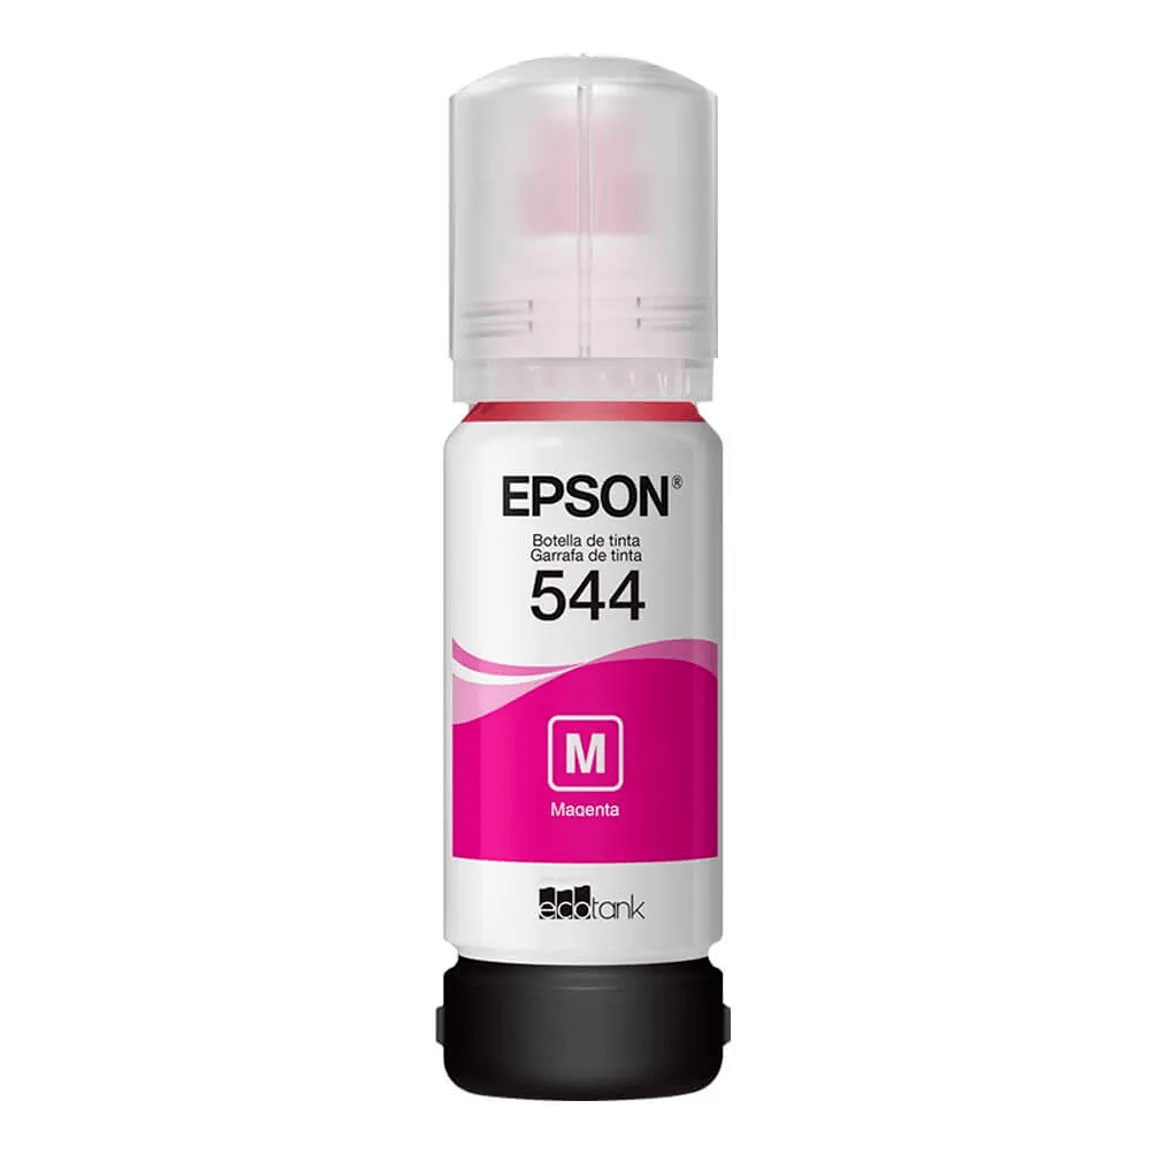 Botella de Tinta Epson T544 Magenta 65ml